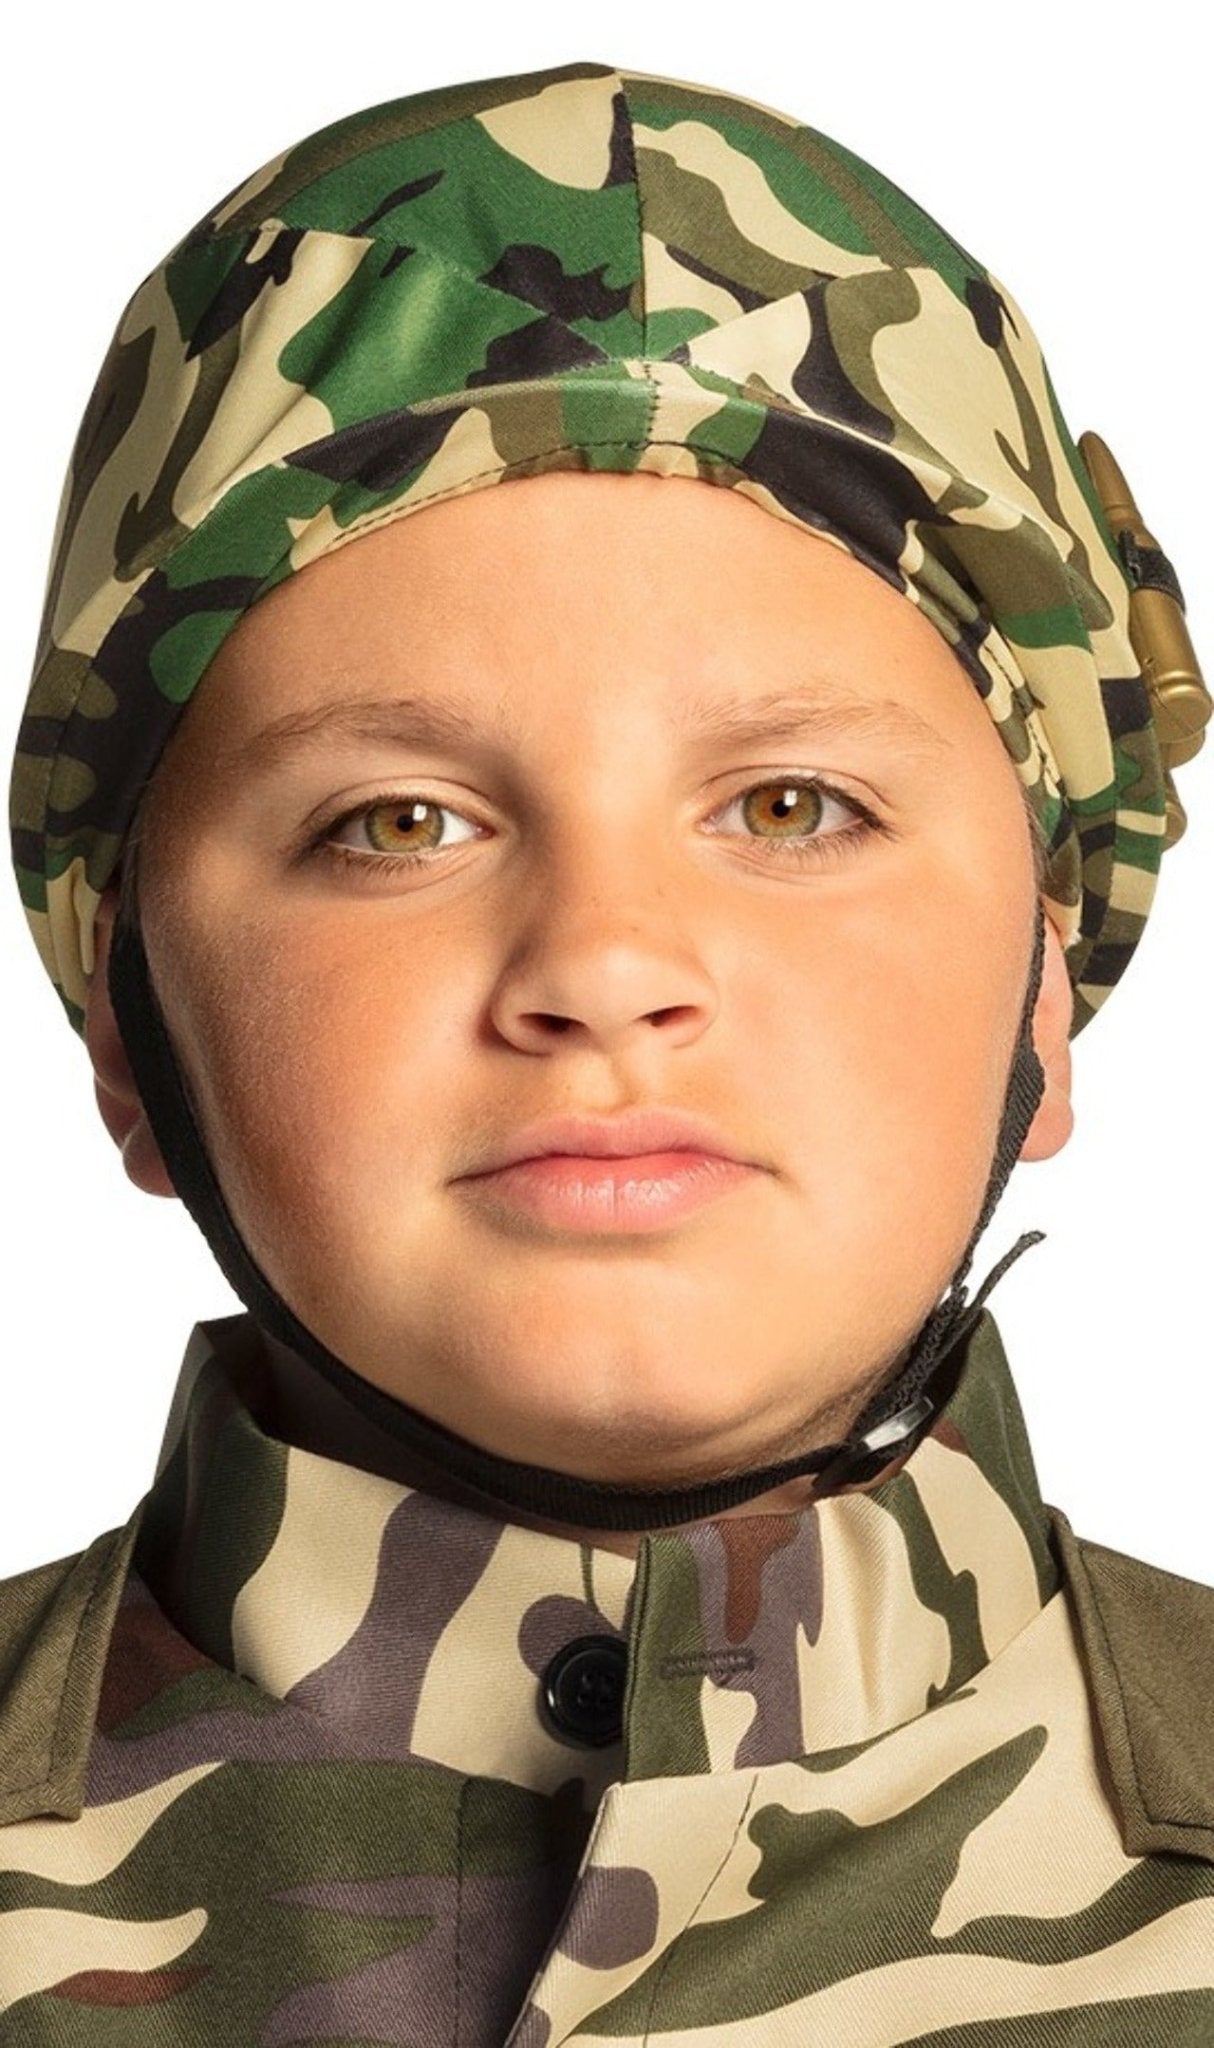 Comprar online Casco Militar infantil